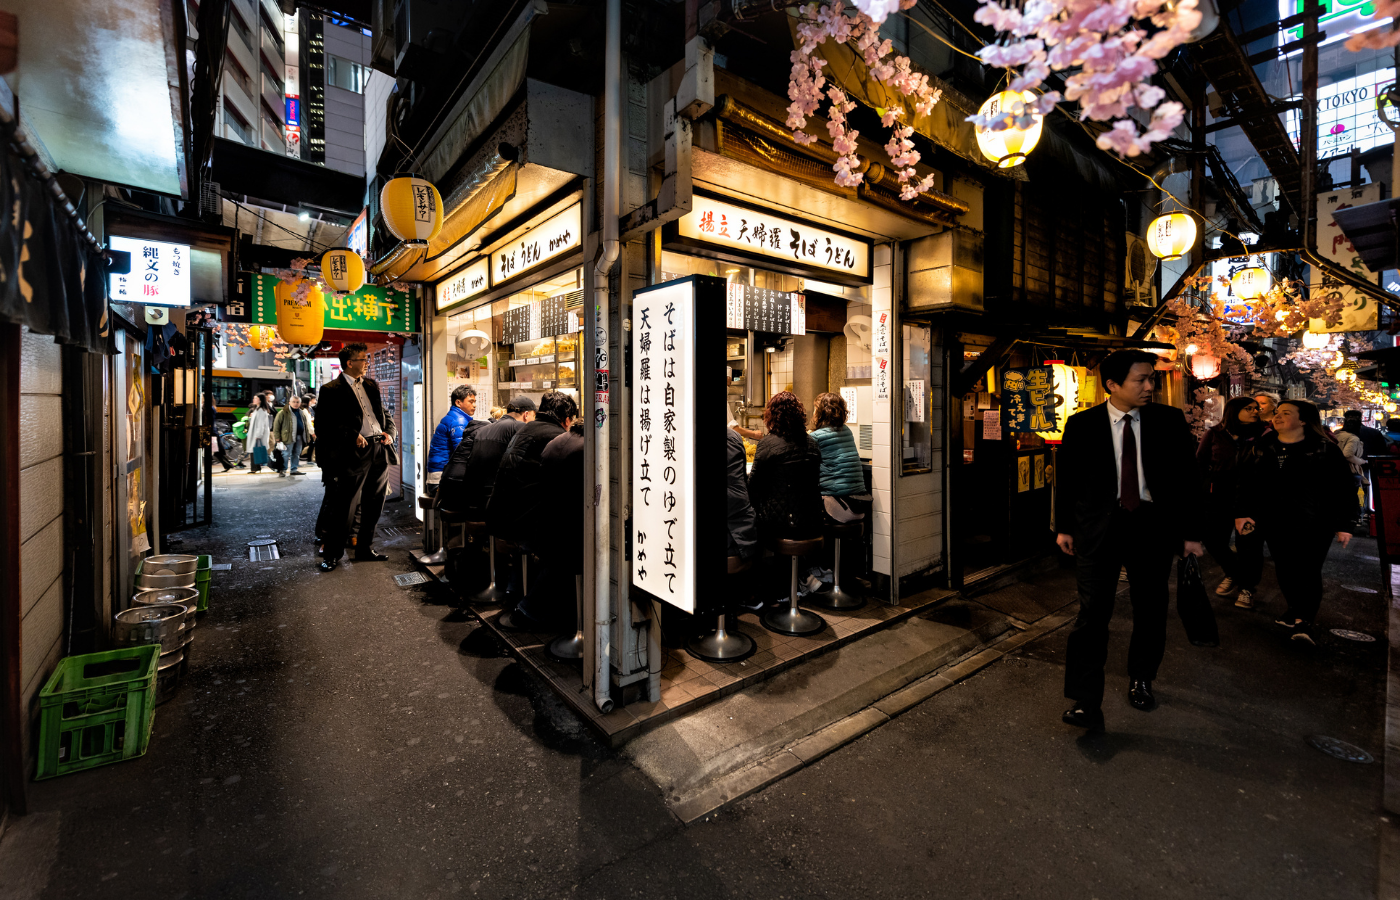 Aleja pamięci z restauracją Izakaya, do której wieczorami zaglądają ludzie biznesu. (Fot. iStock)